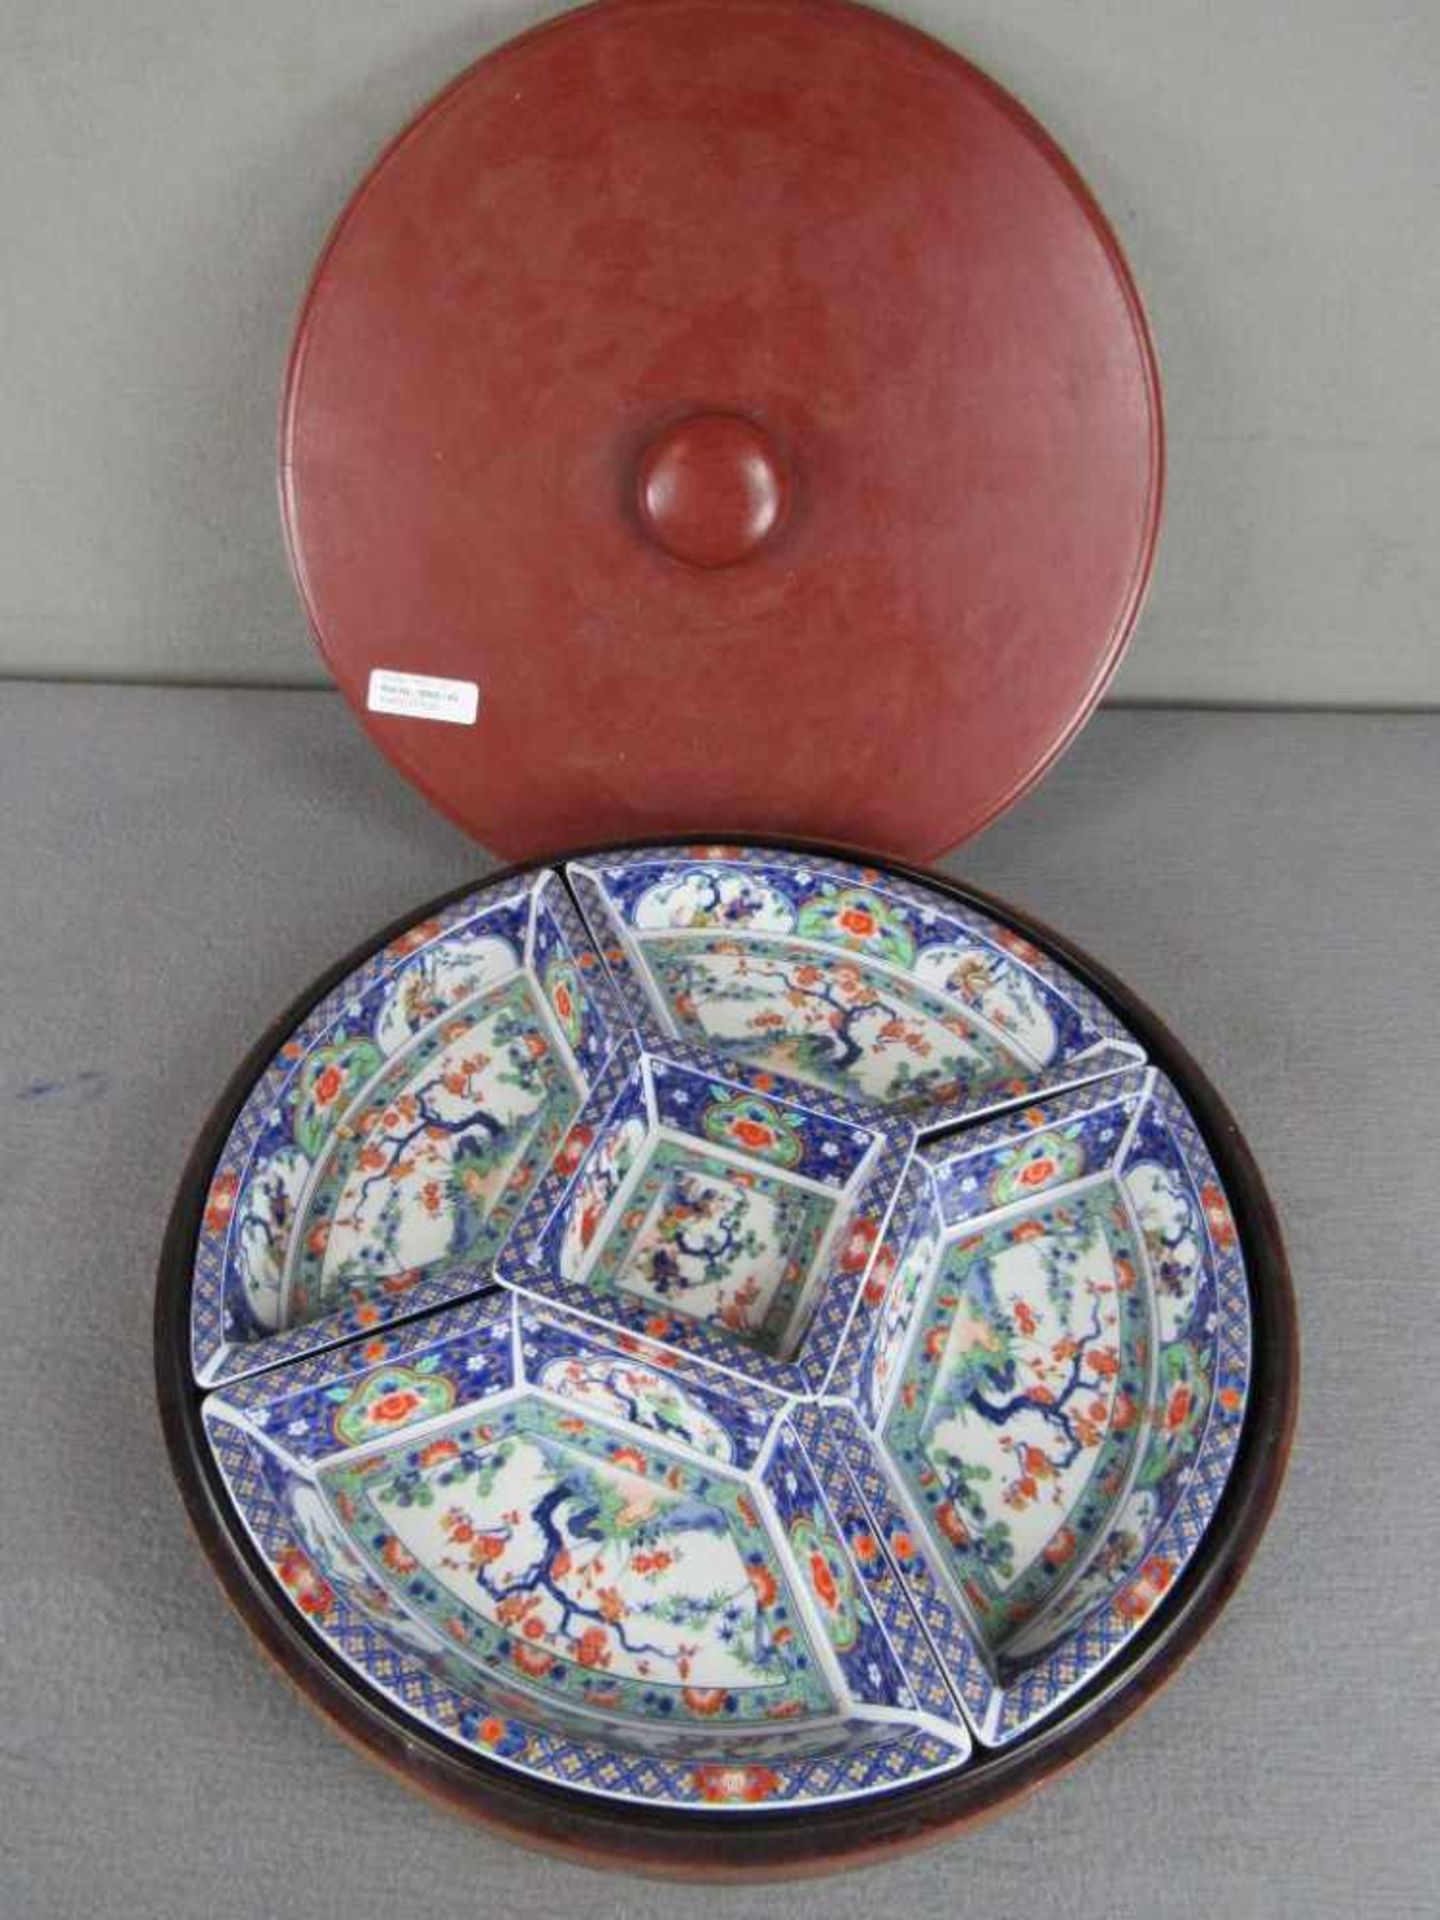 Chinesische Warmhalte bzw - Reismenagerie Schälchen in lasierter Keramik drehbare Holzschatulle